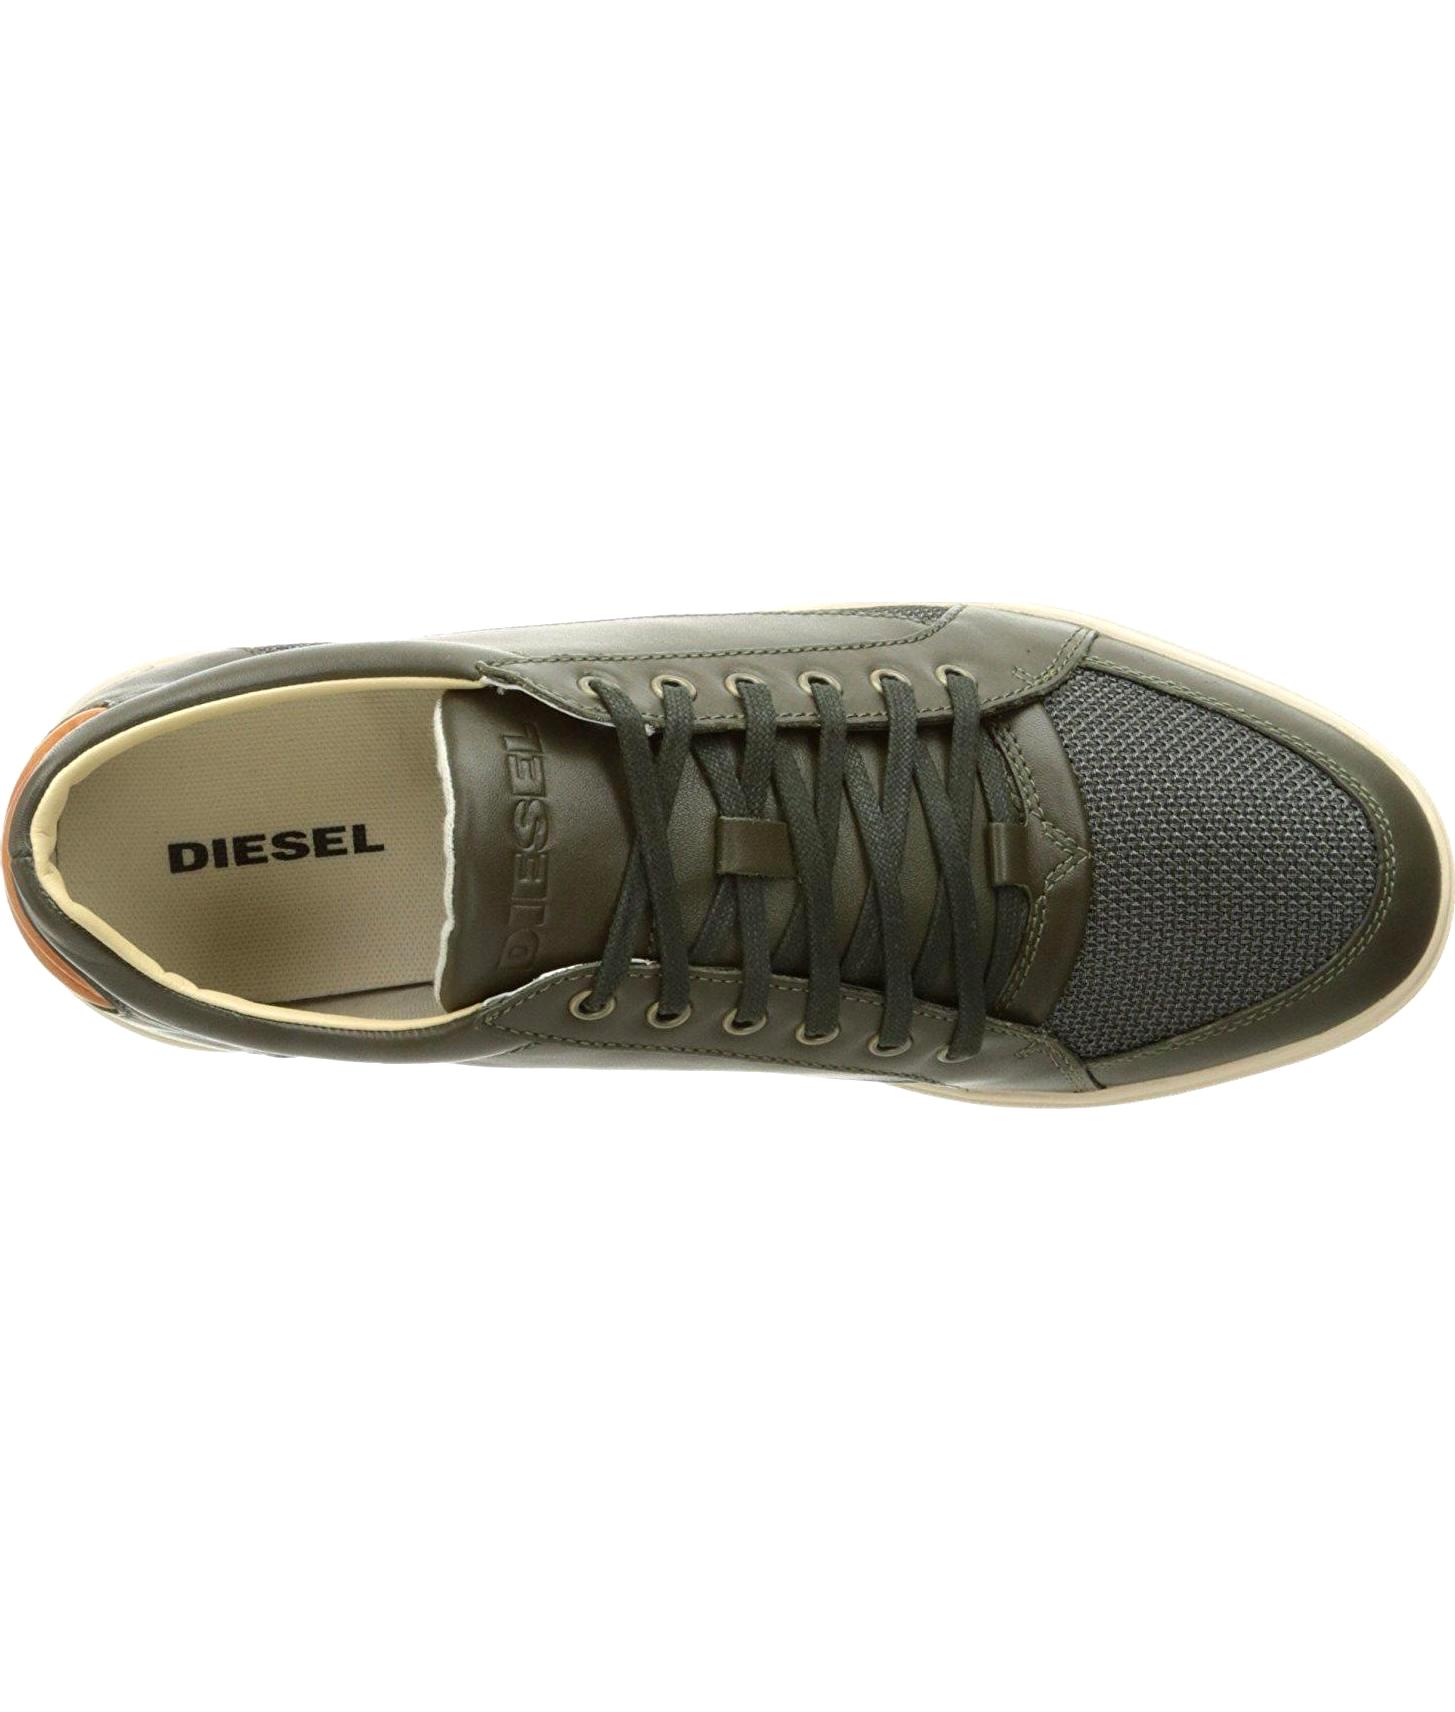 Diesel Mens Fashionisto S Gr 1157 5 1